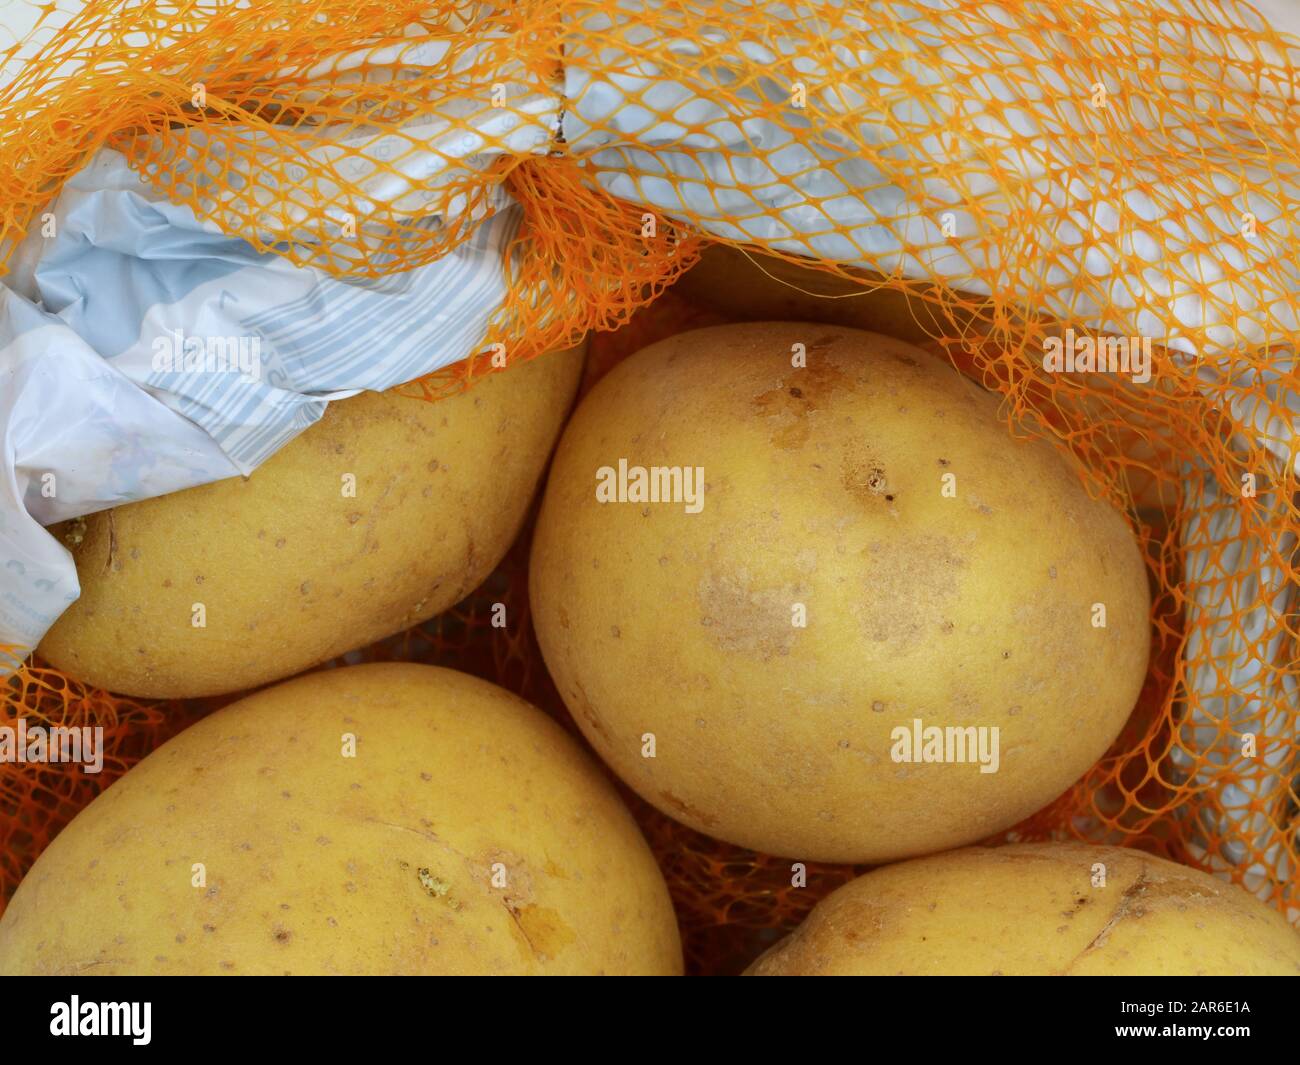 Patatas en una bolsa de red naranja o paquete de plástico, cierre Foto de stock